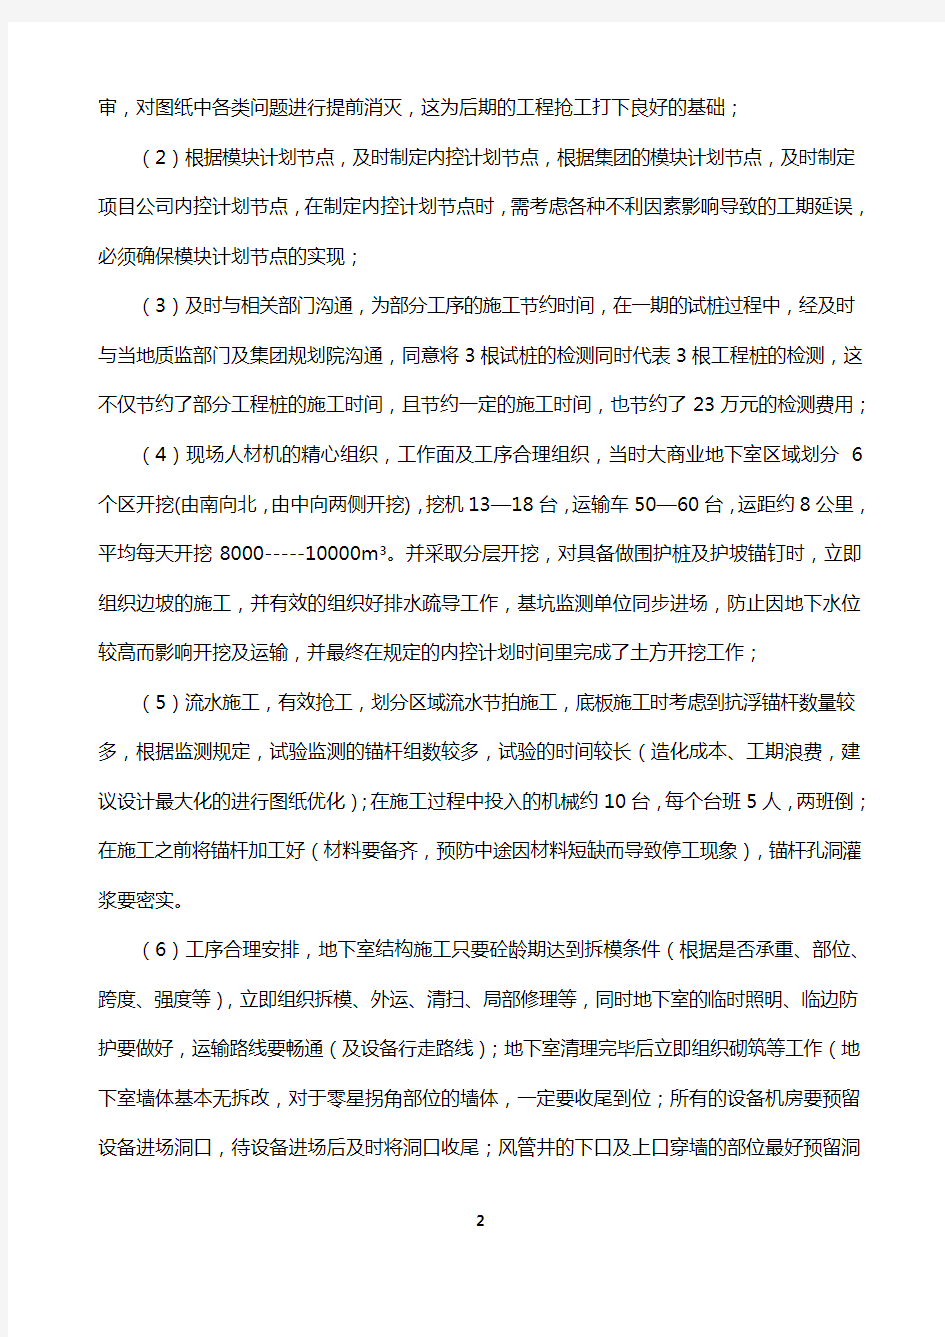 蚌埠项目万达广场项目工程部复盘总报告20140108